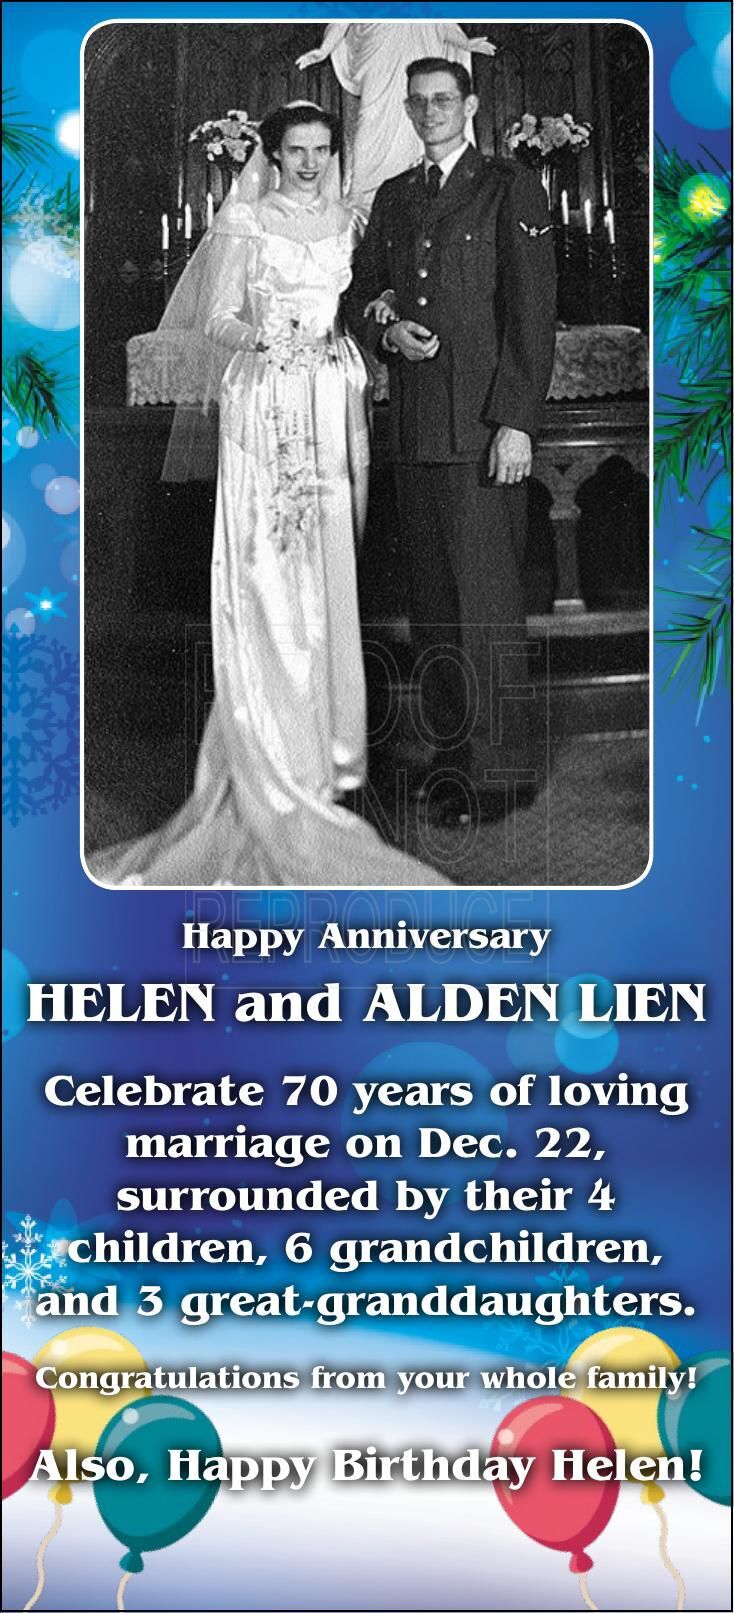 Helen and Alden Lien